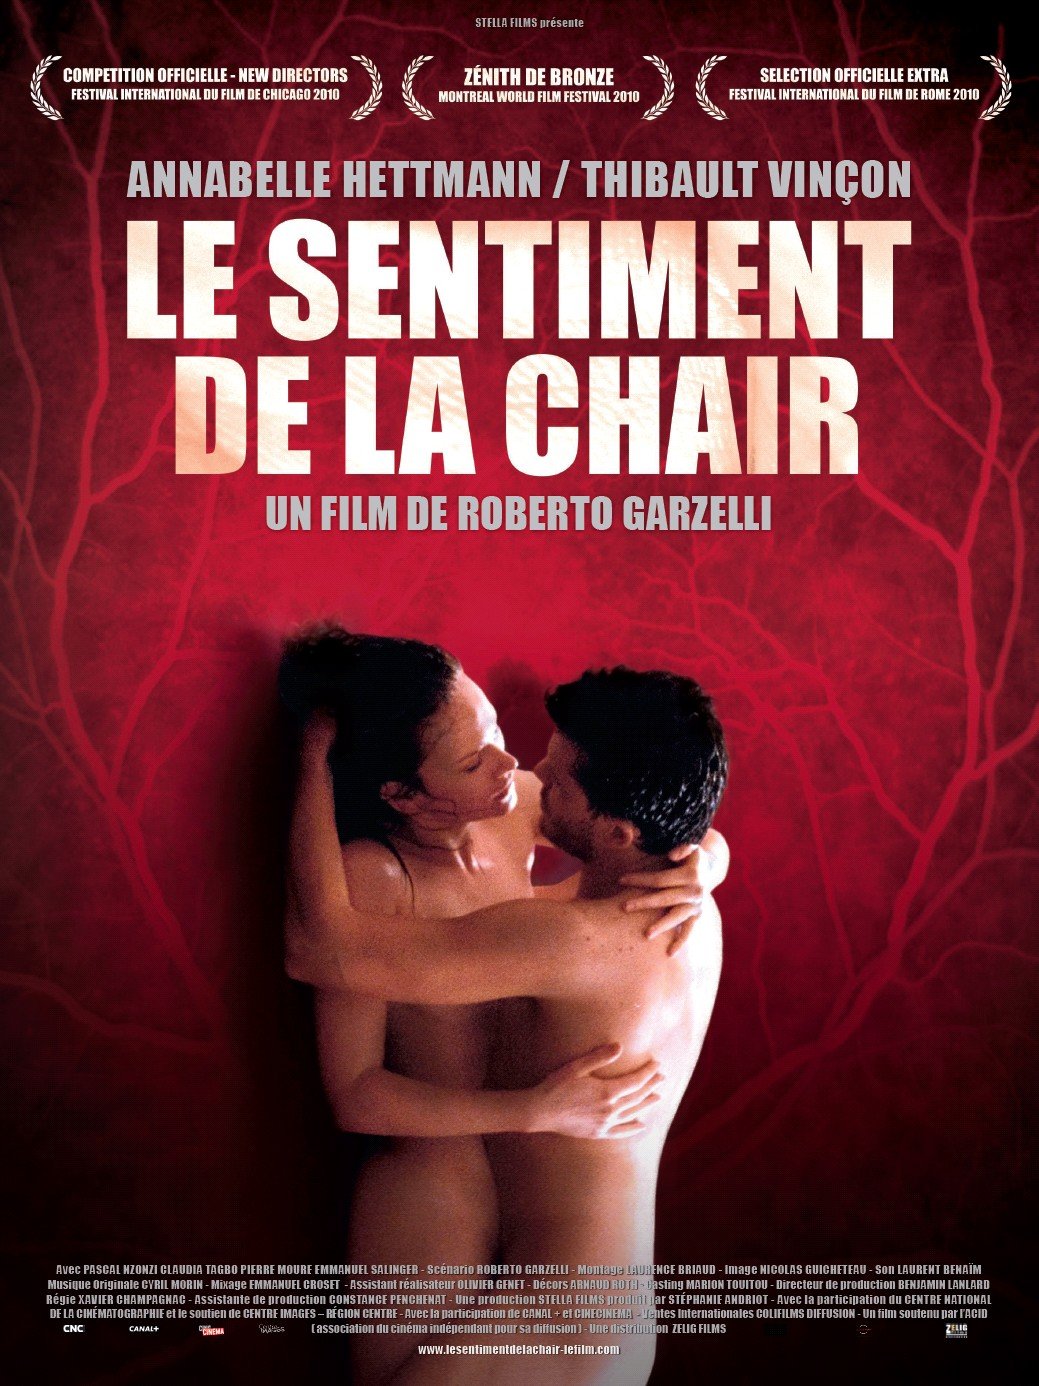 Extra Large Movie Poster Image for Le sentiment de la chair 